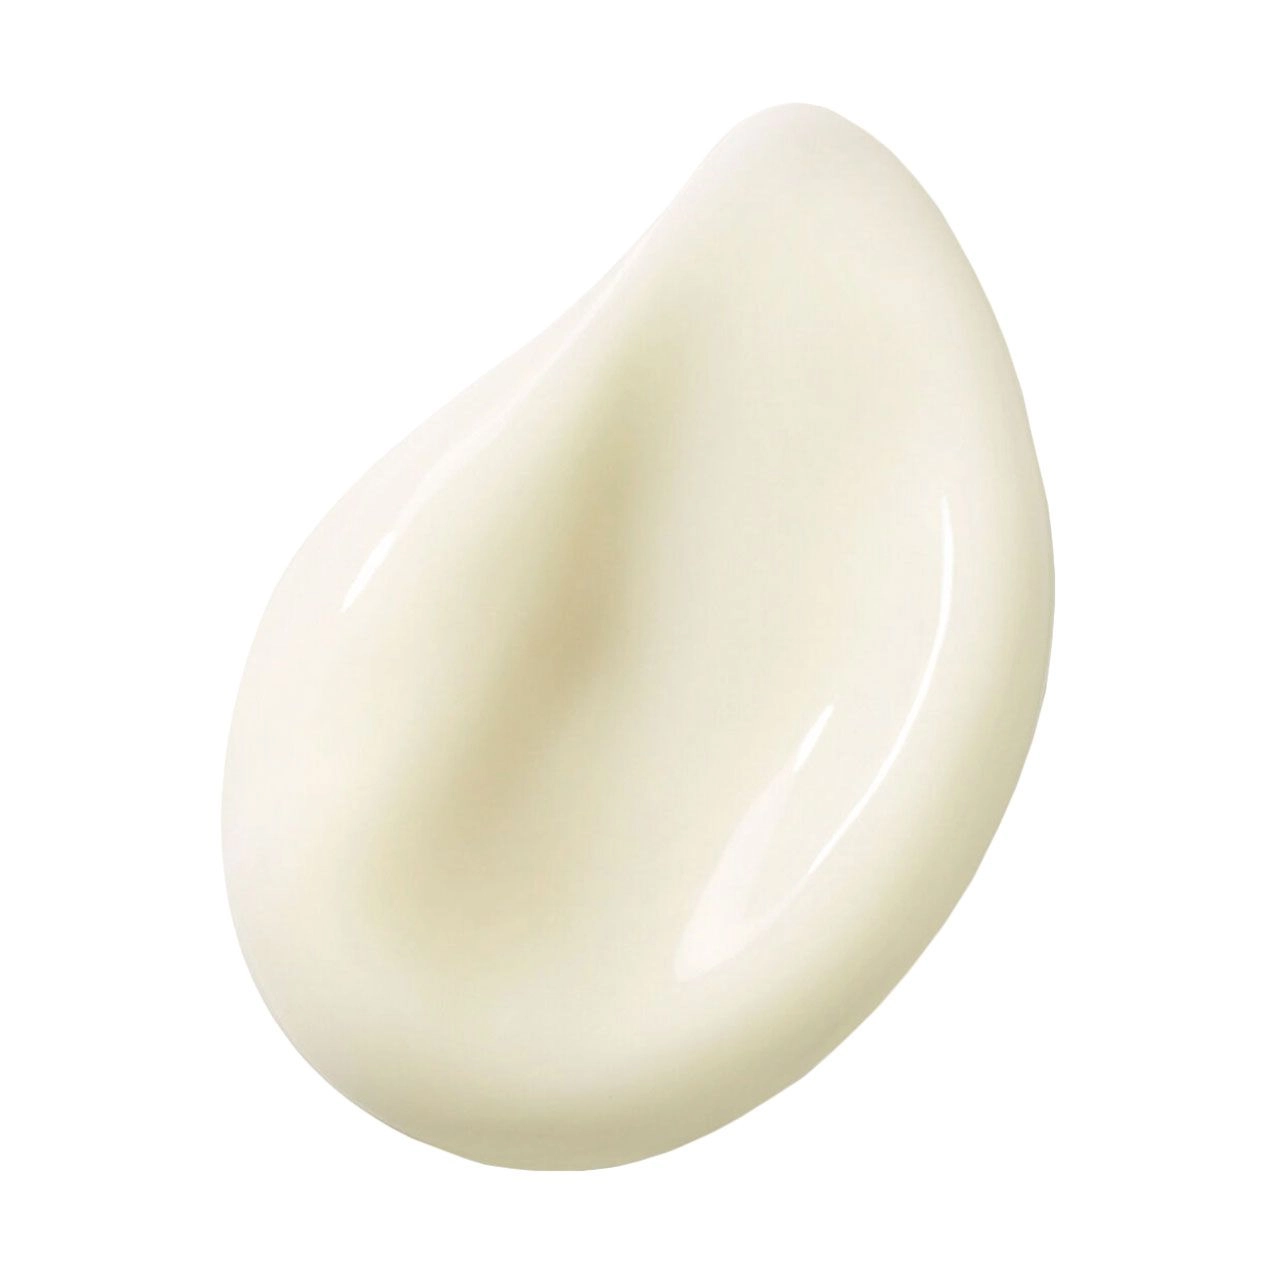 Guerlain Дневной матирующий крем для лица Abeille Royale Mattifying Day Cream, 50 мл - фото N2